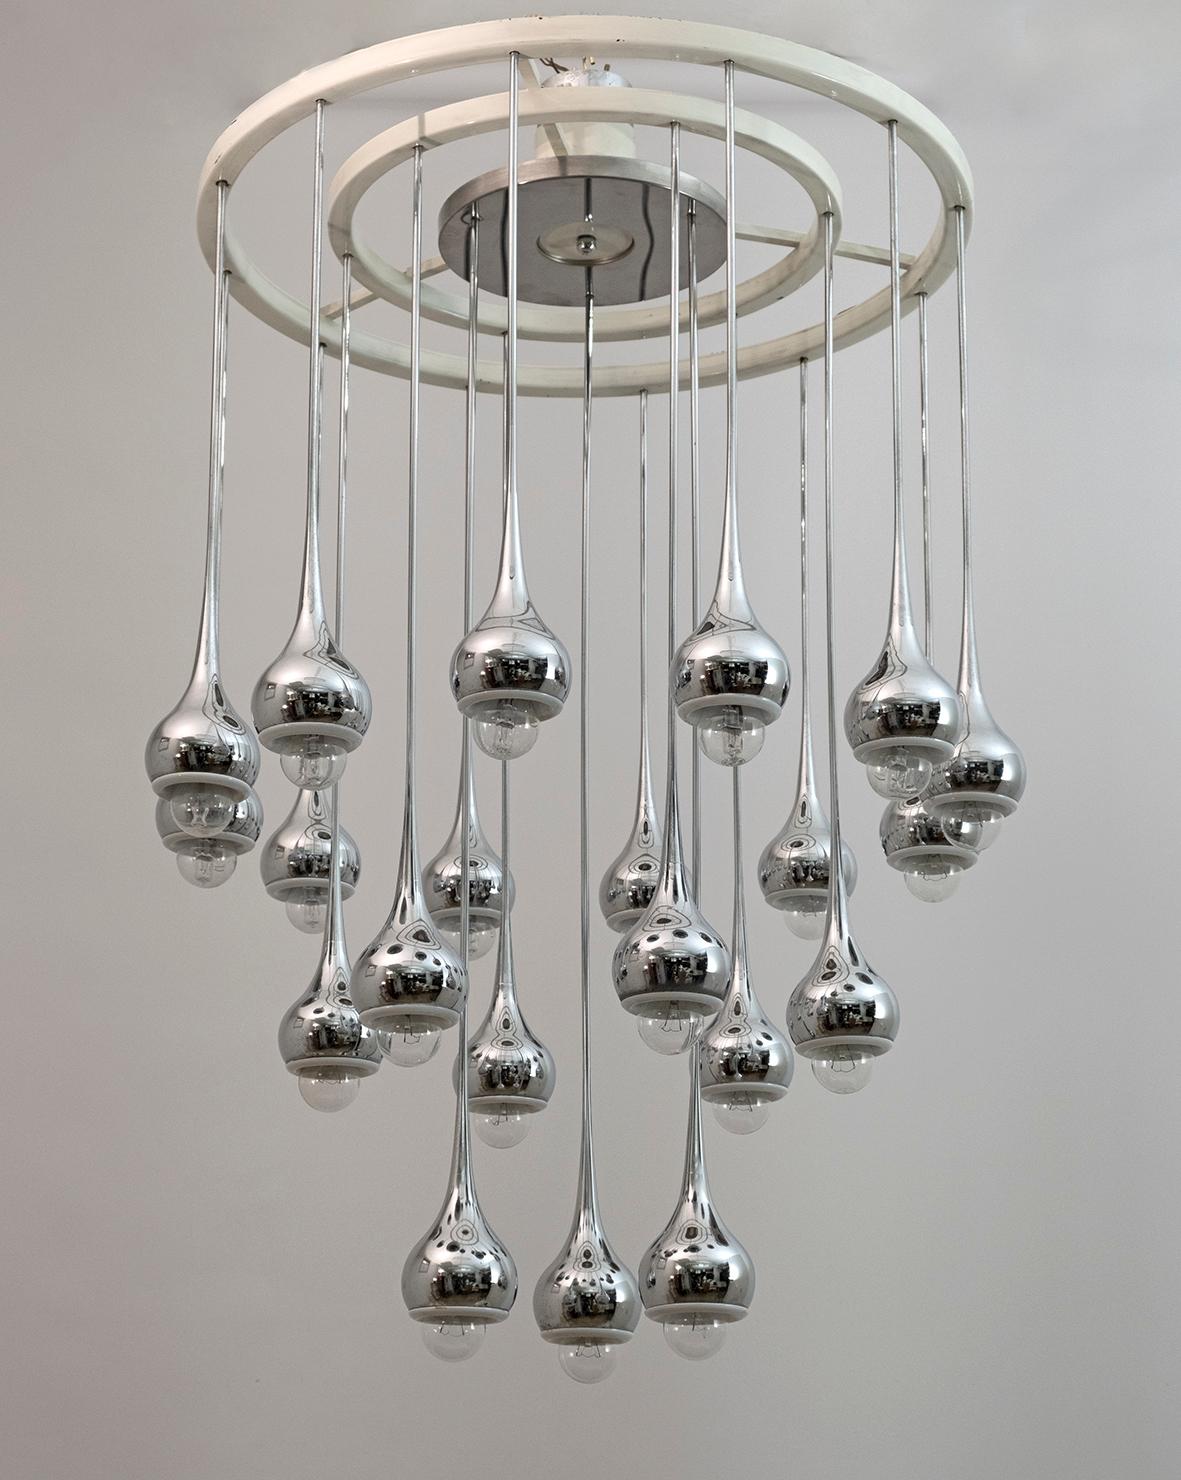 Un surprenant lustre Esperia, 21 pampilles en métal chromé représentant des gouttes d'eau dégoulinant du plafond.